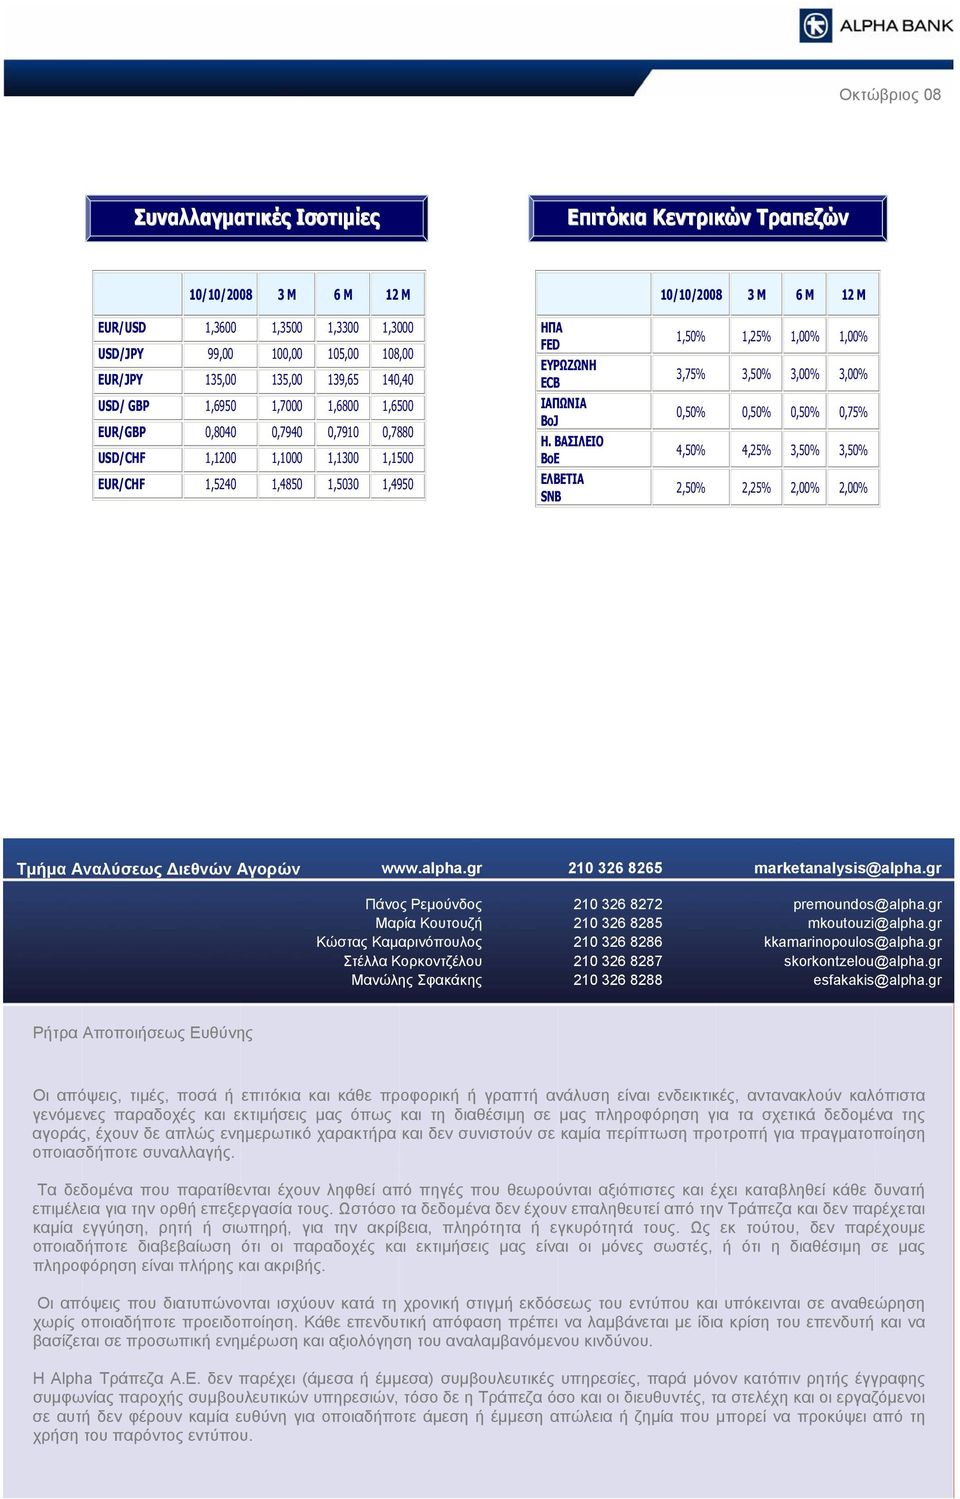 ΒΑΣΙΛΕΙΟ BoE ΕΛΒΕΤΙΑ SNB 1,5% 1,25% 1,% 1,% 3,75% 3,5% 3,% 3,%,5%,5%,5%,75% 4,5% 4,25% 3,5% 3,5% 2,5% 2,25% 2,% 2,% Τμήμα Αναλύσεως Διεθνών Αγορών www.alpha.gr 21 326 8265 marketanalysis@alpha.